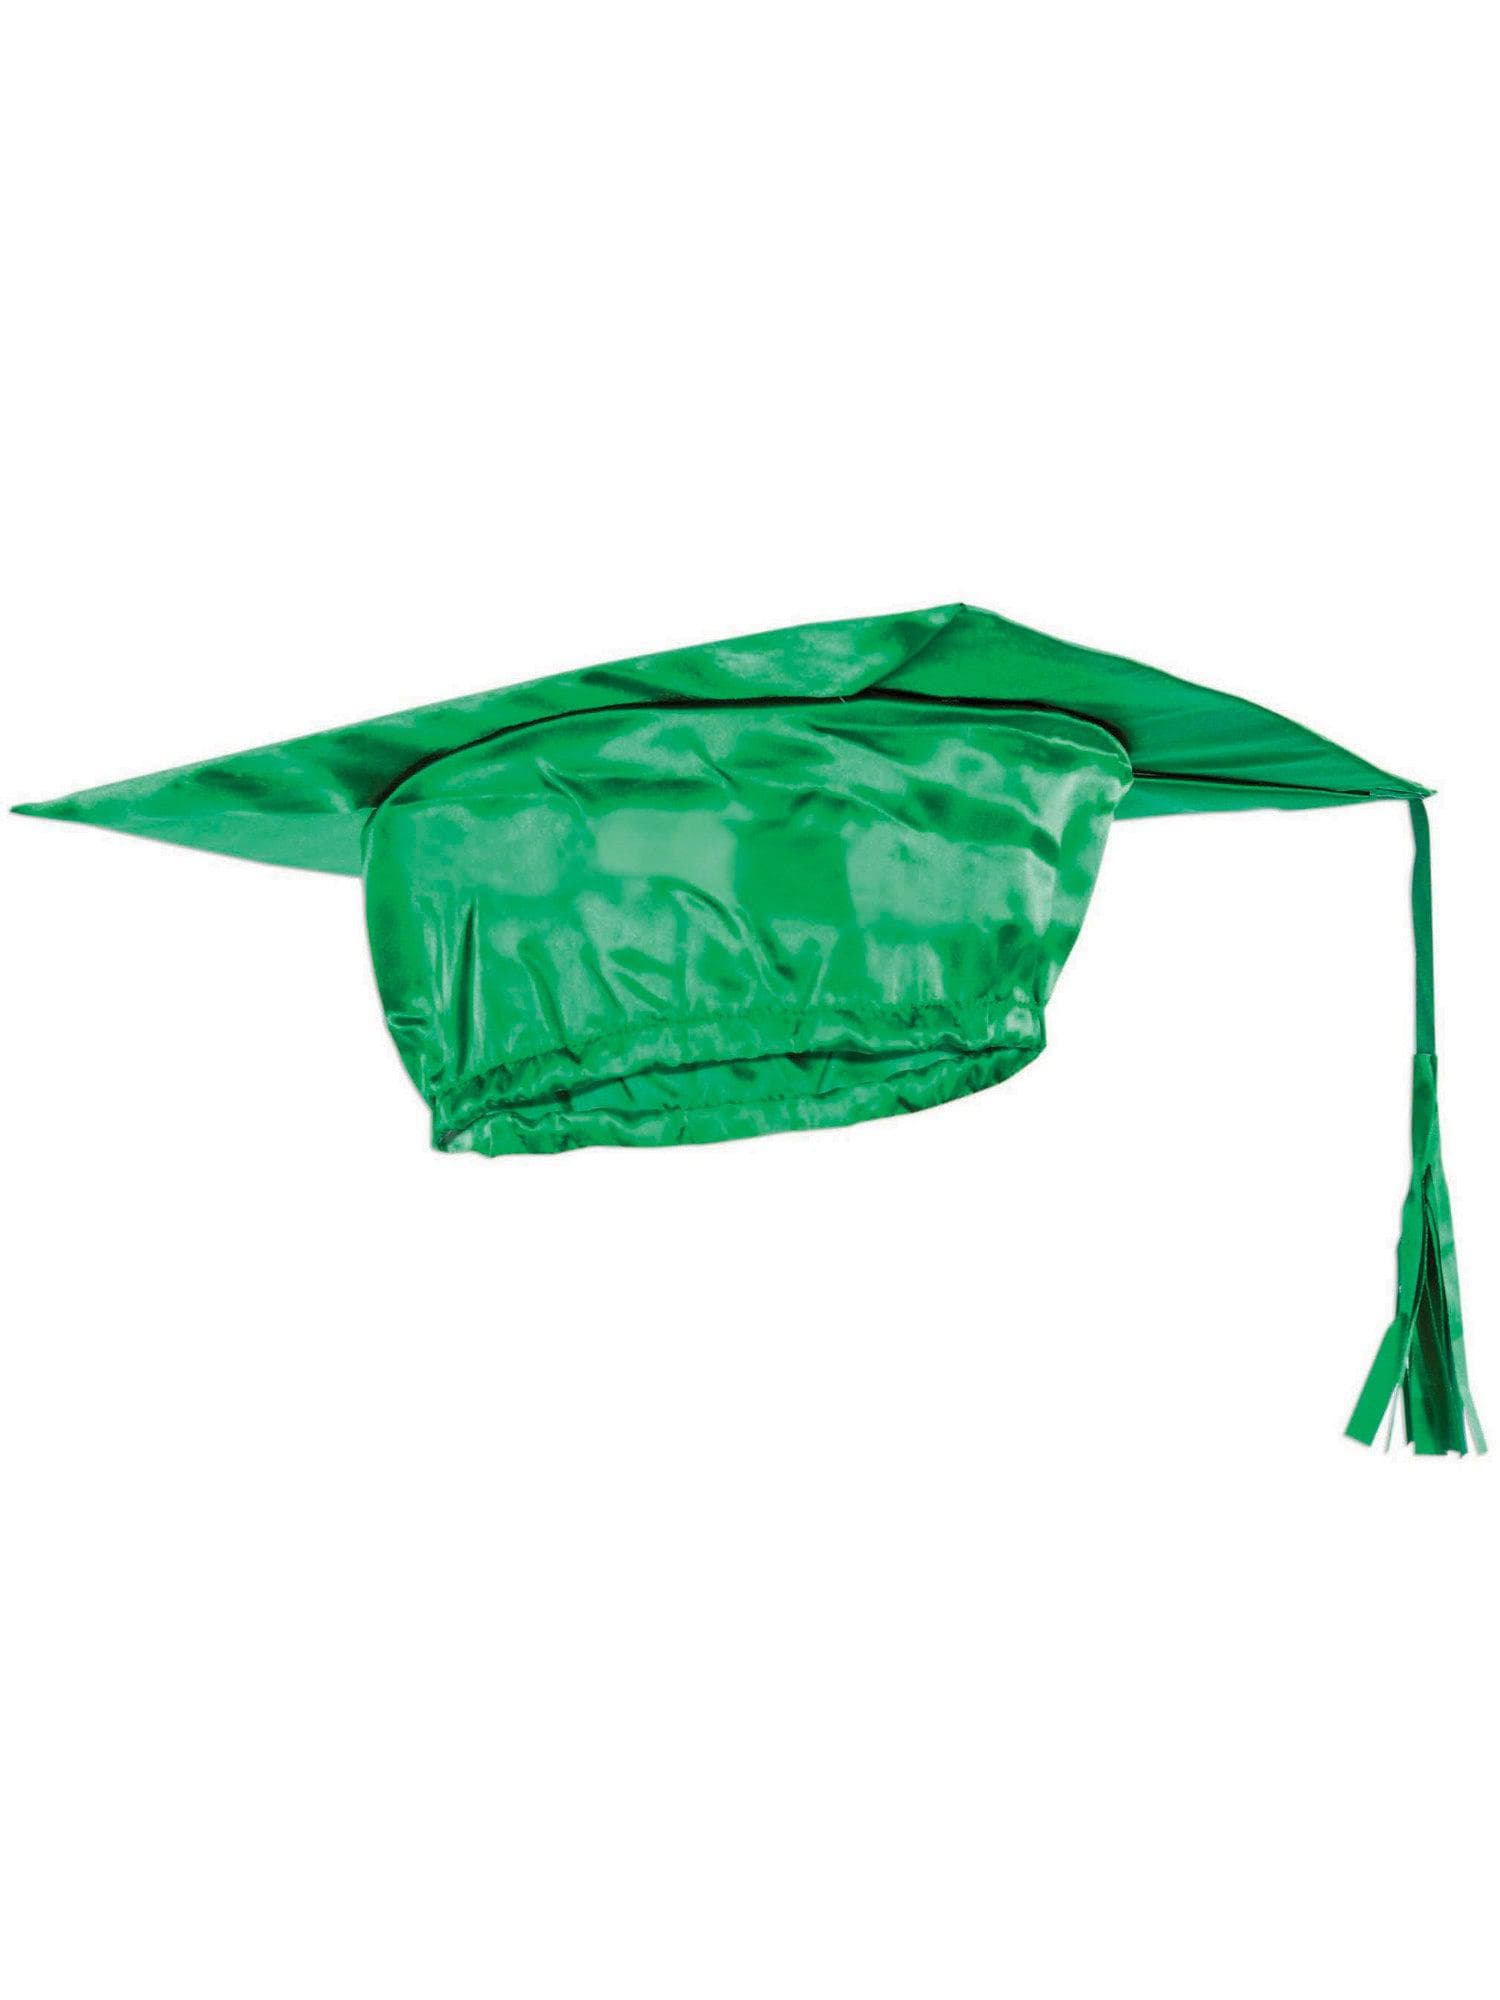 Green Graduation Adult Cap - costumes.com